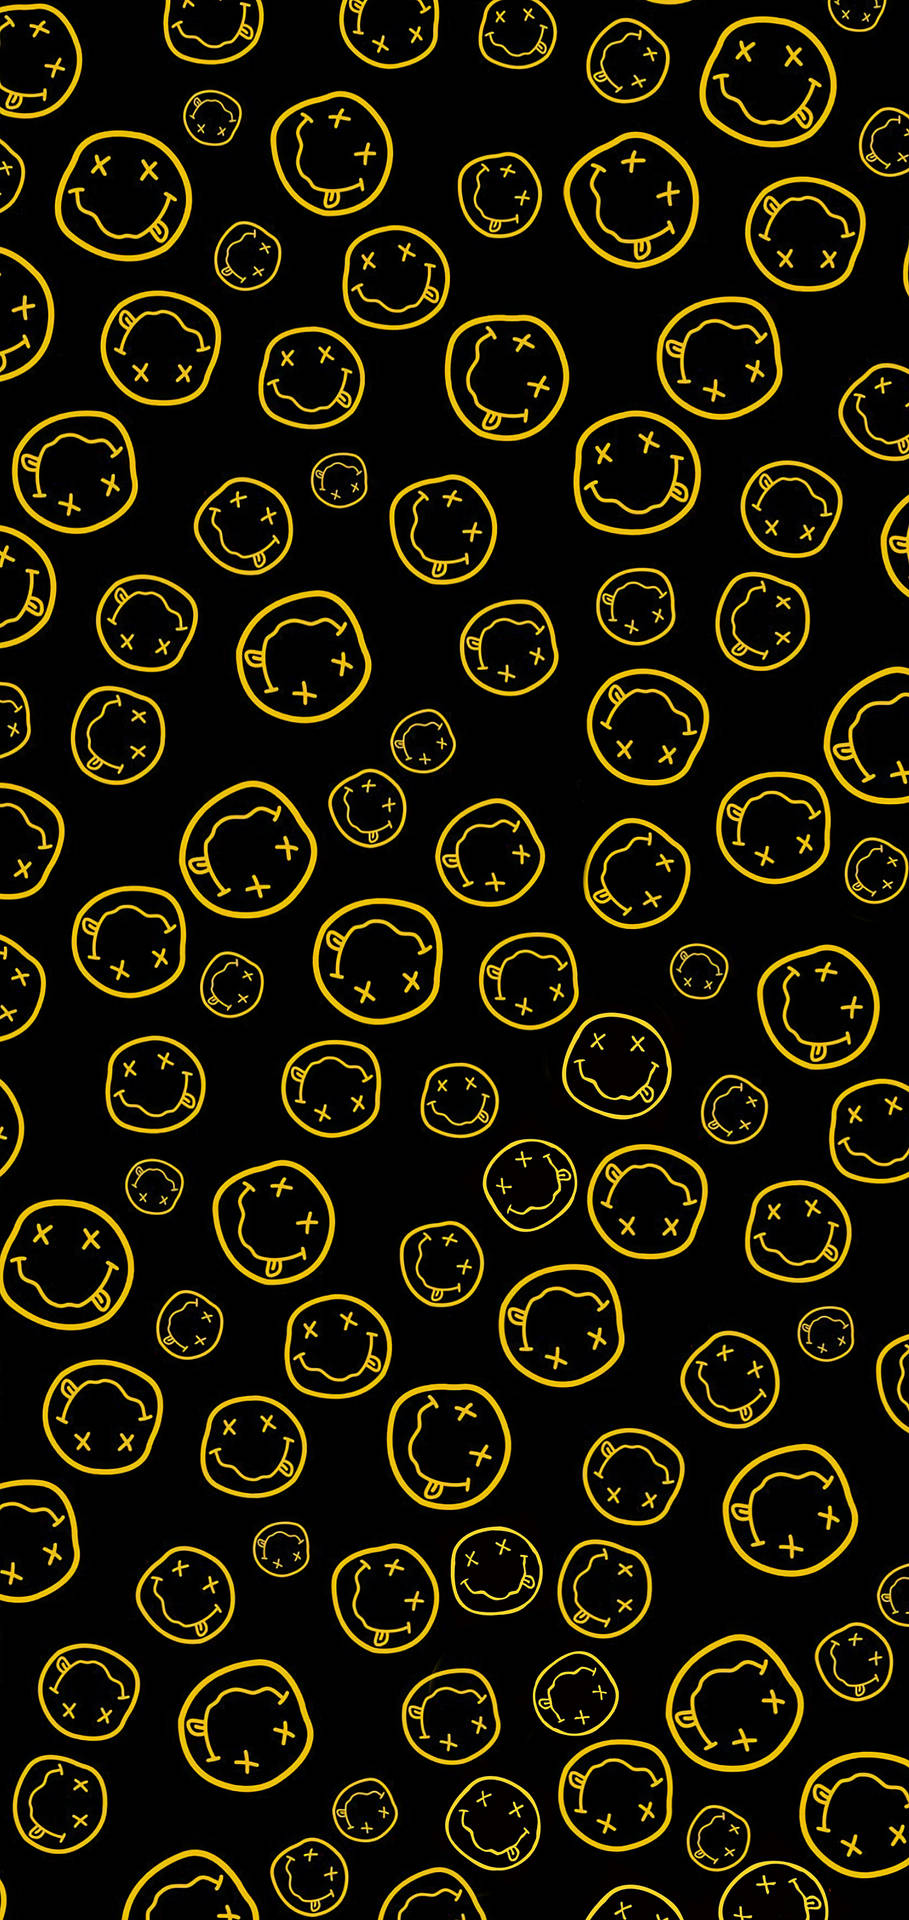 Nirvana Smiley Faces Wallpaper